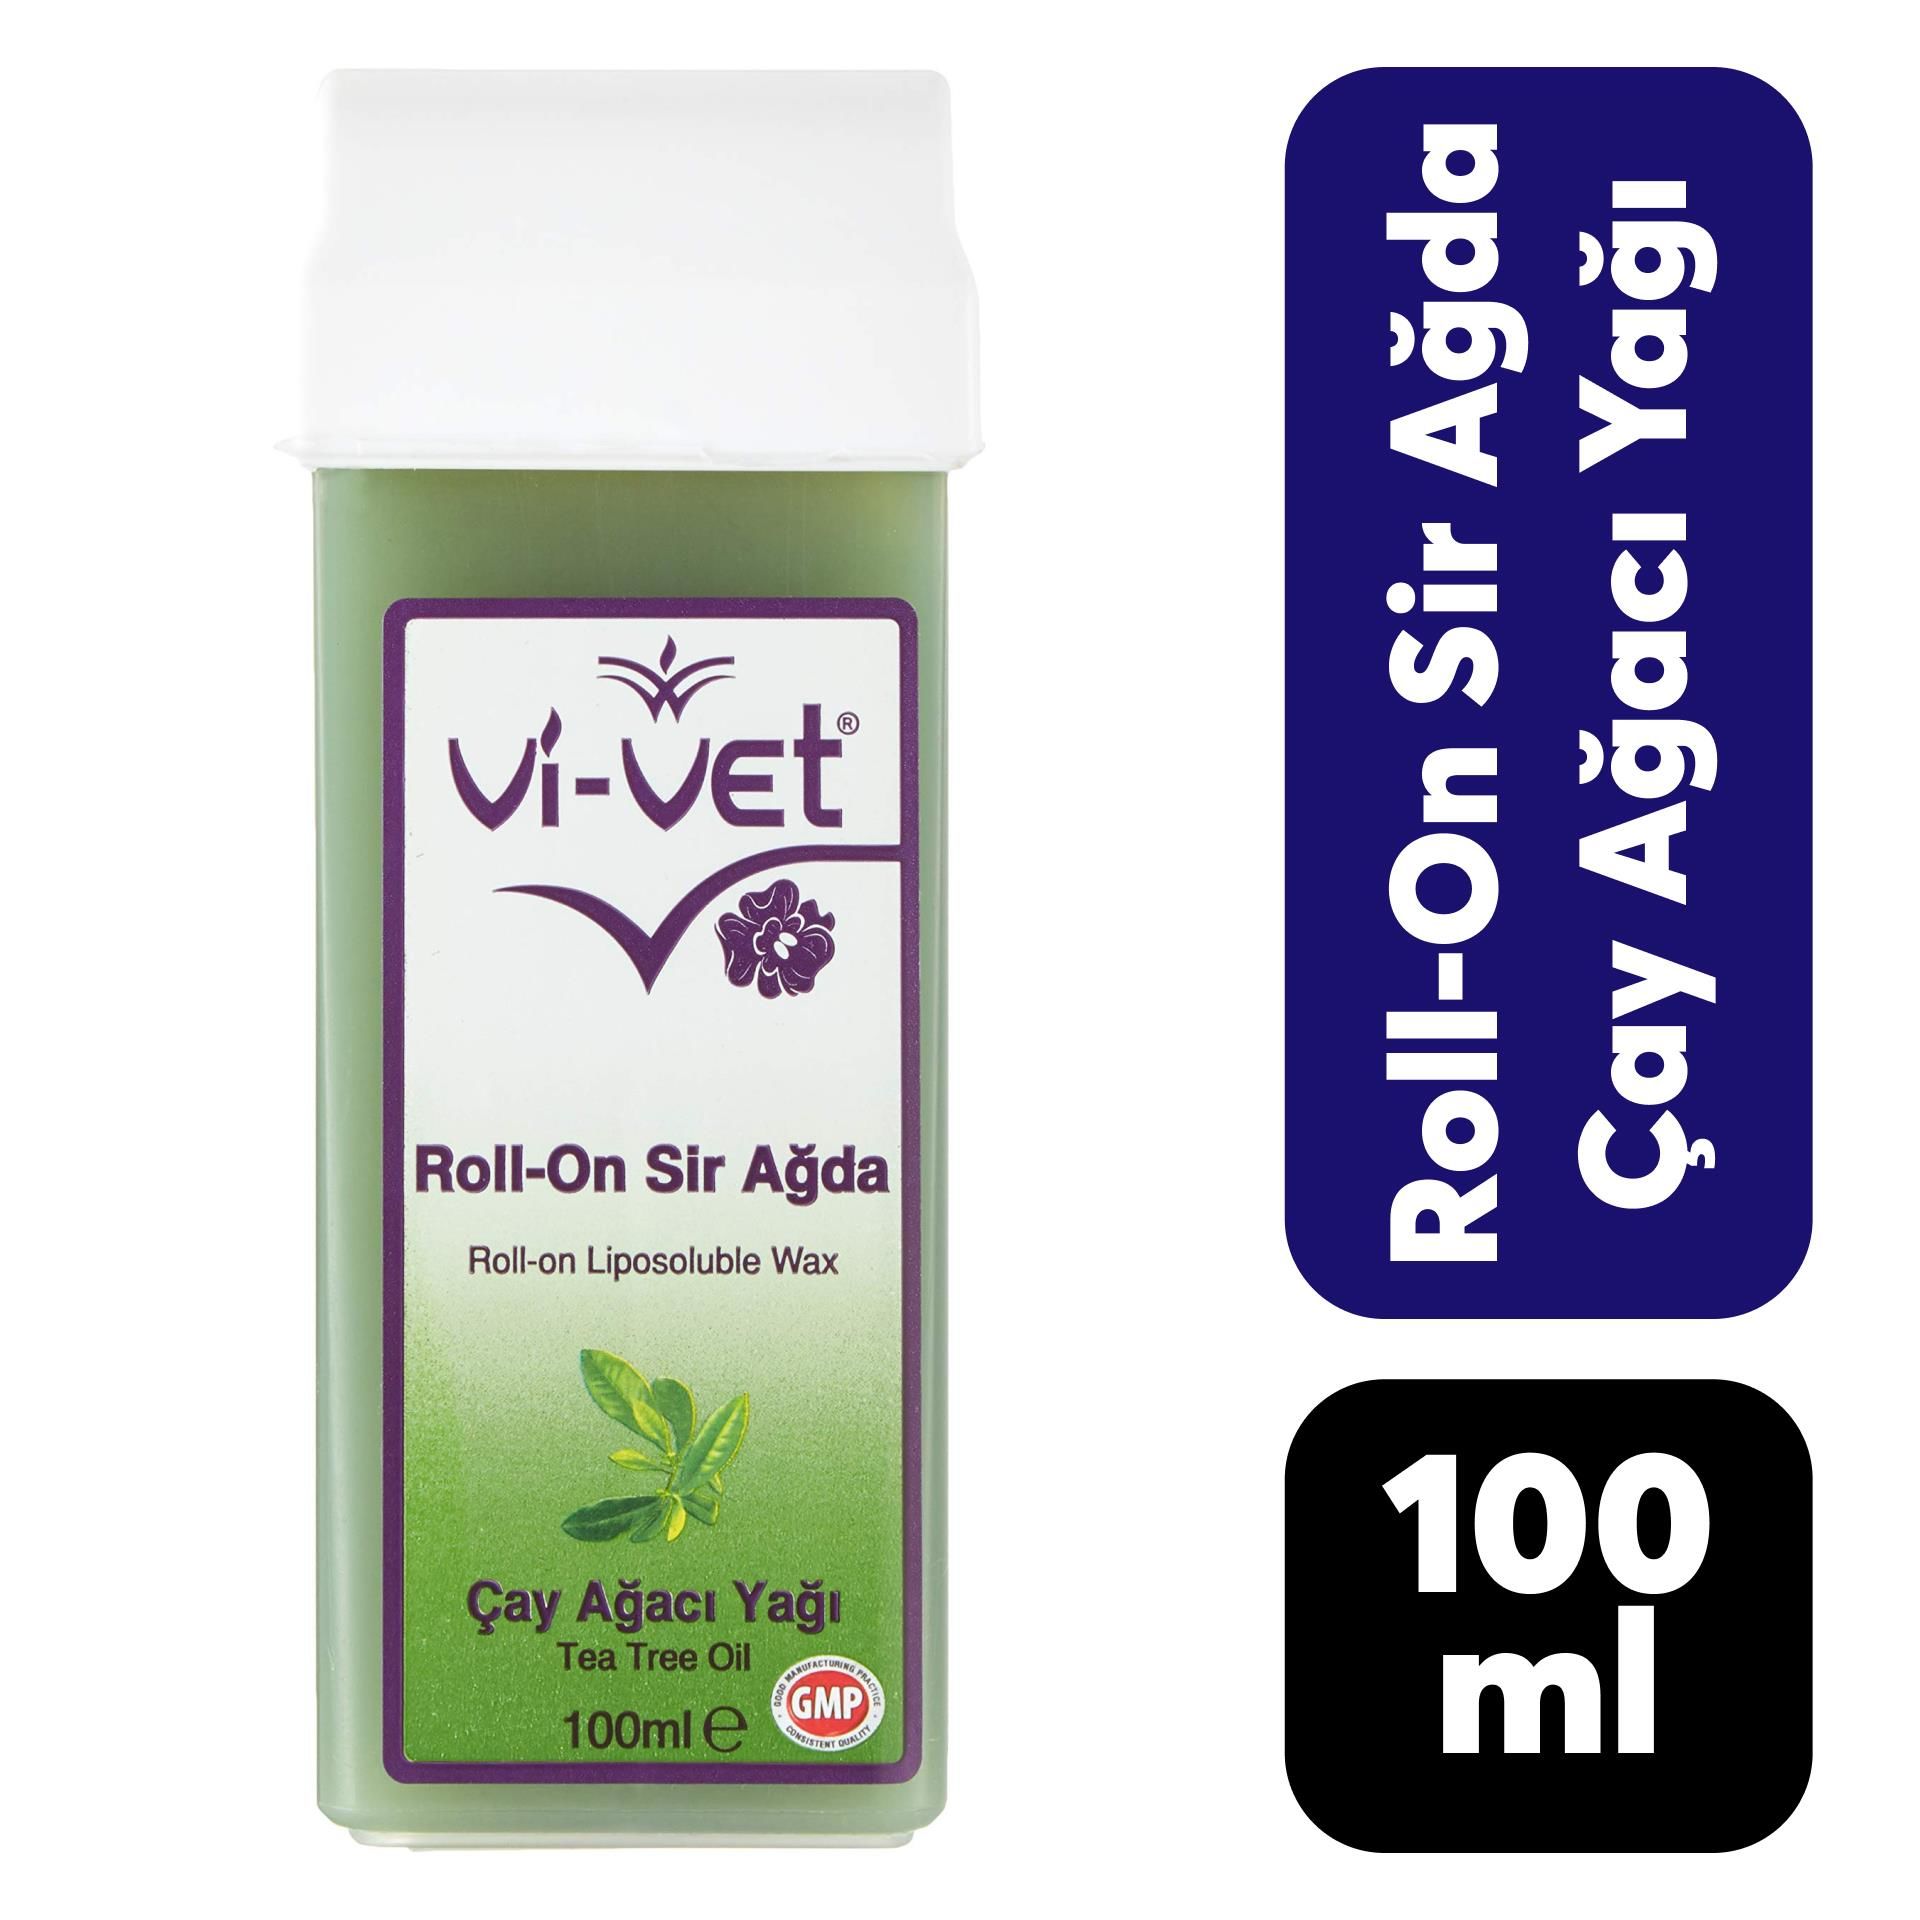 Vi-Vet Roll-On Sir Ağda 100 ml Çay Ağacı Yağı